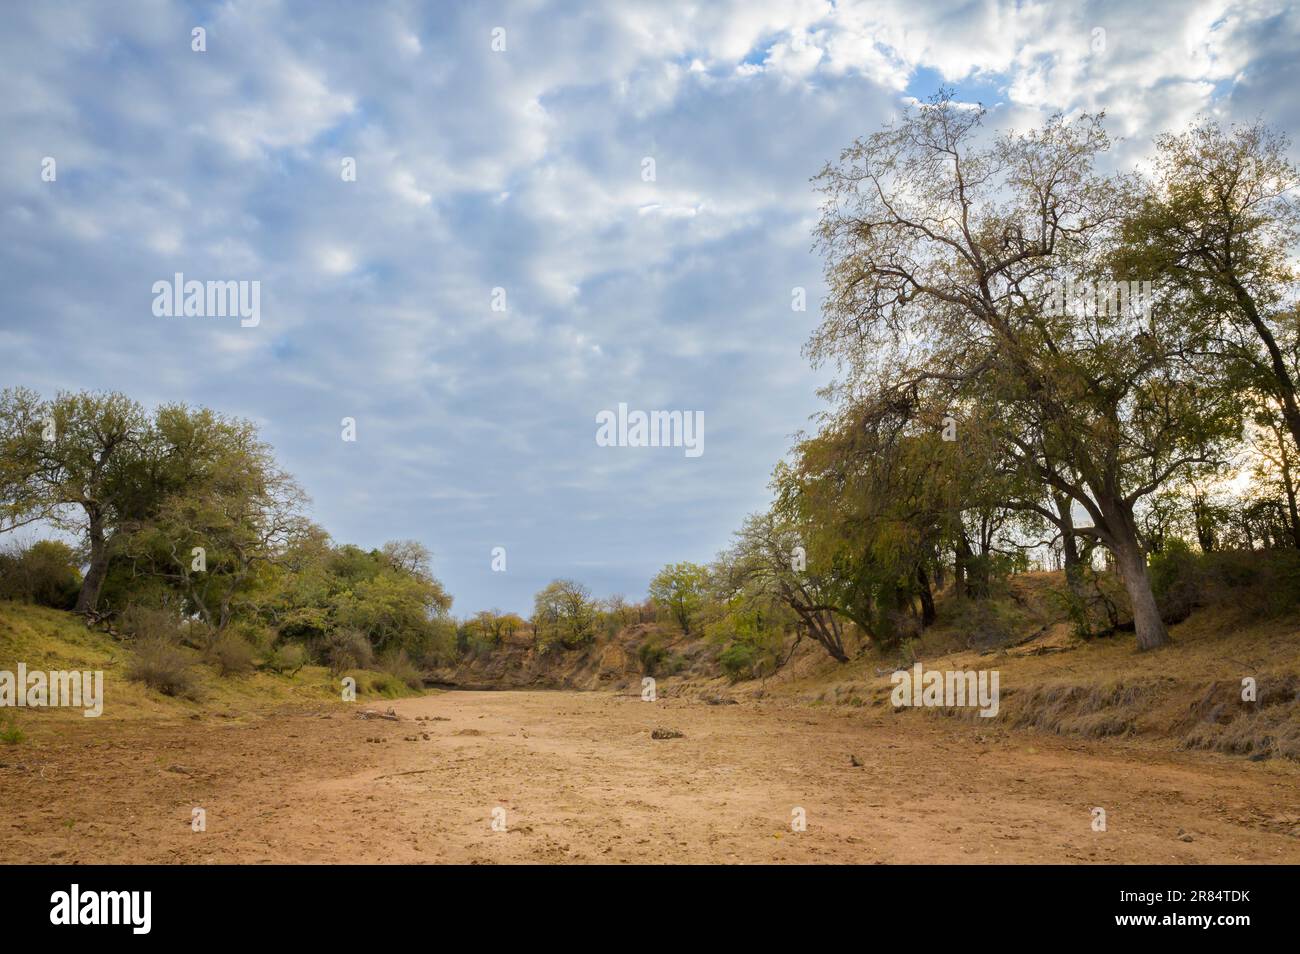 Lit de sable sec avec arbres, parc national Kruger, Limpopo, Afrique du Sud. Banque D'Images